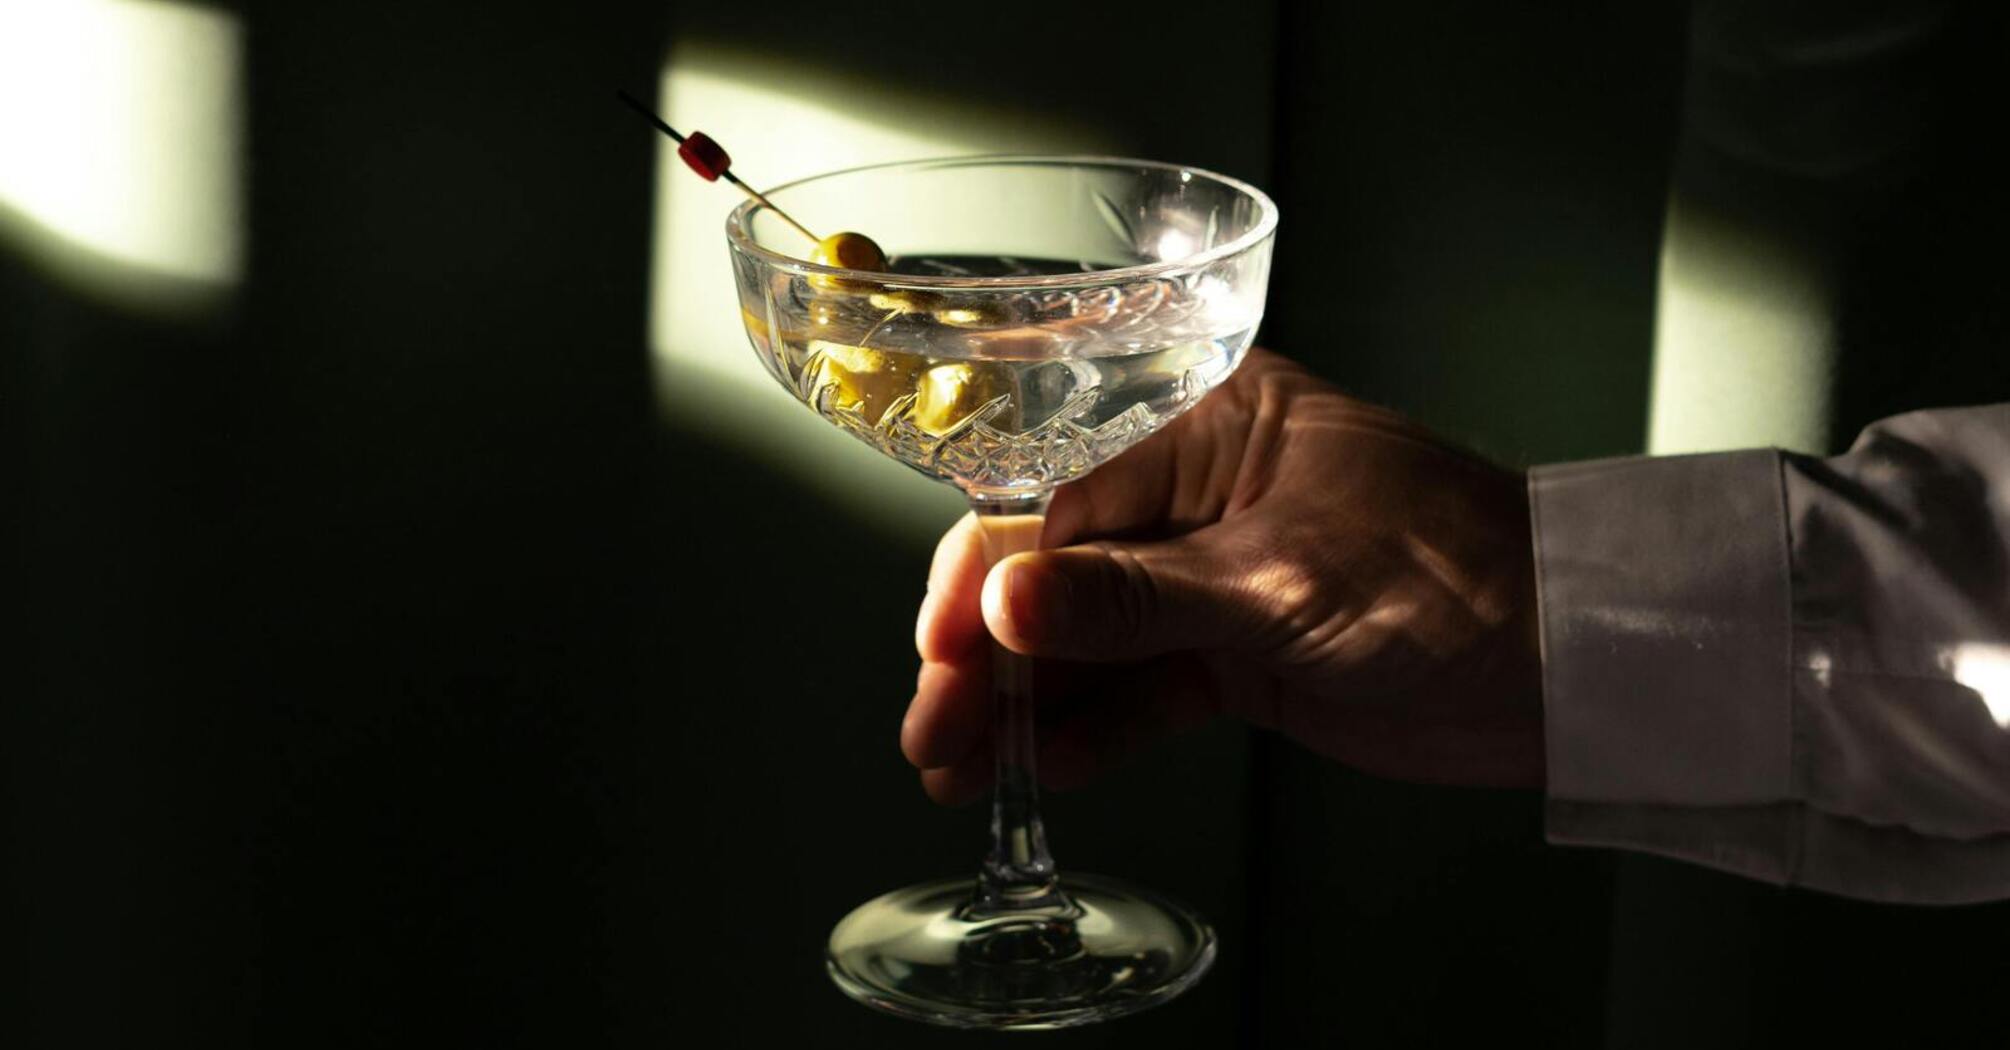 Martini glass in hand